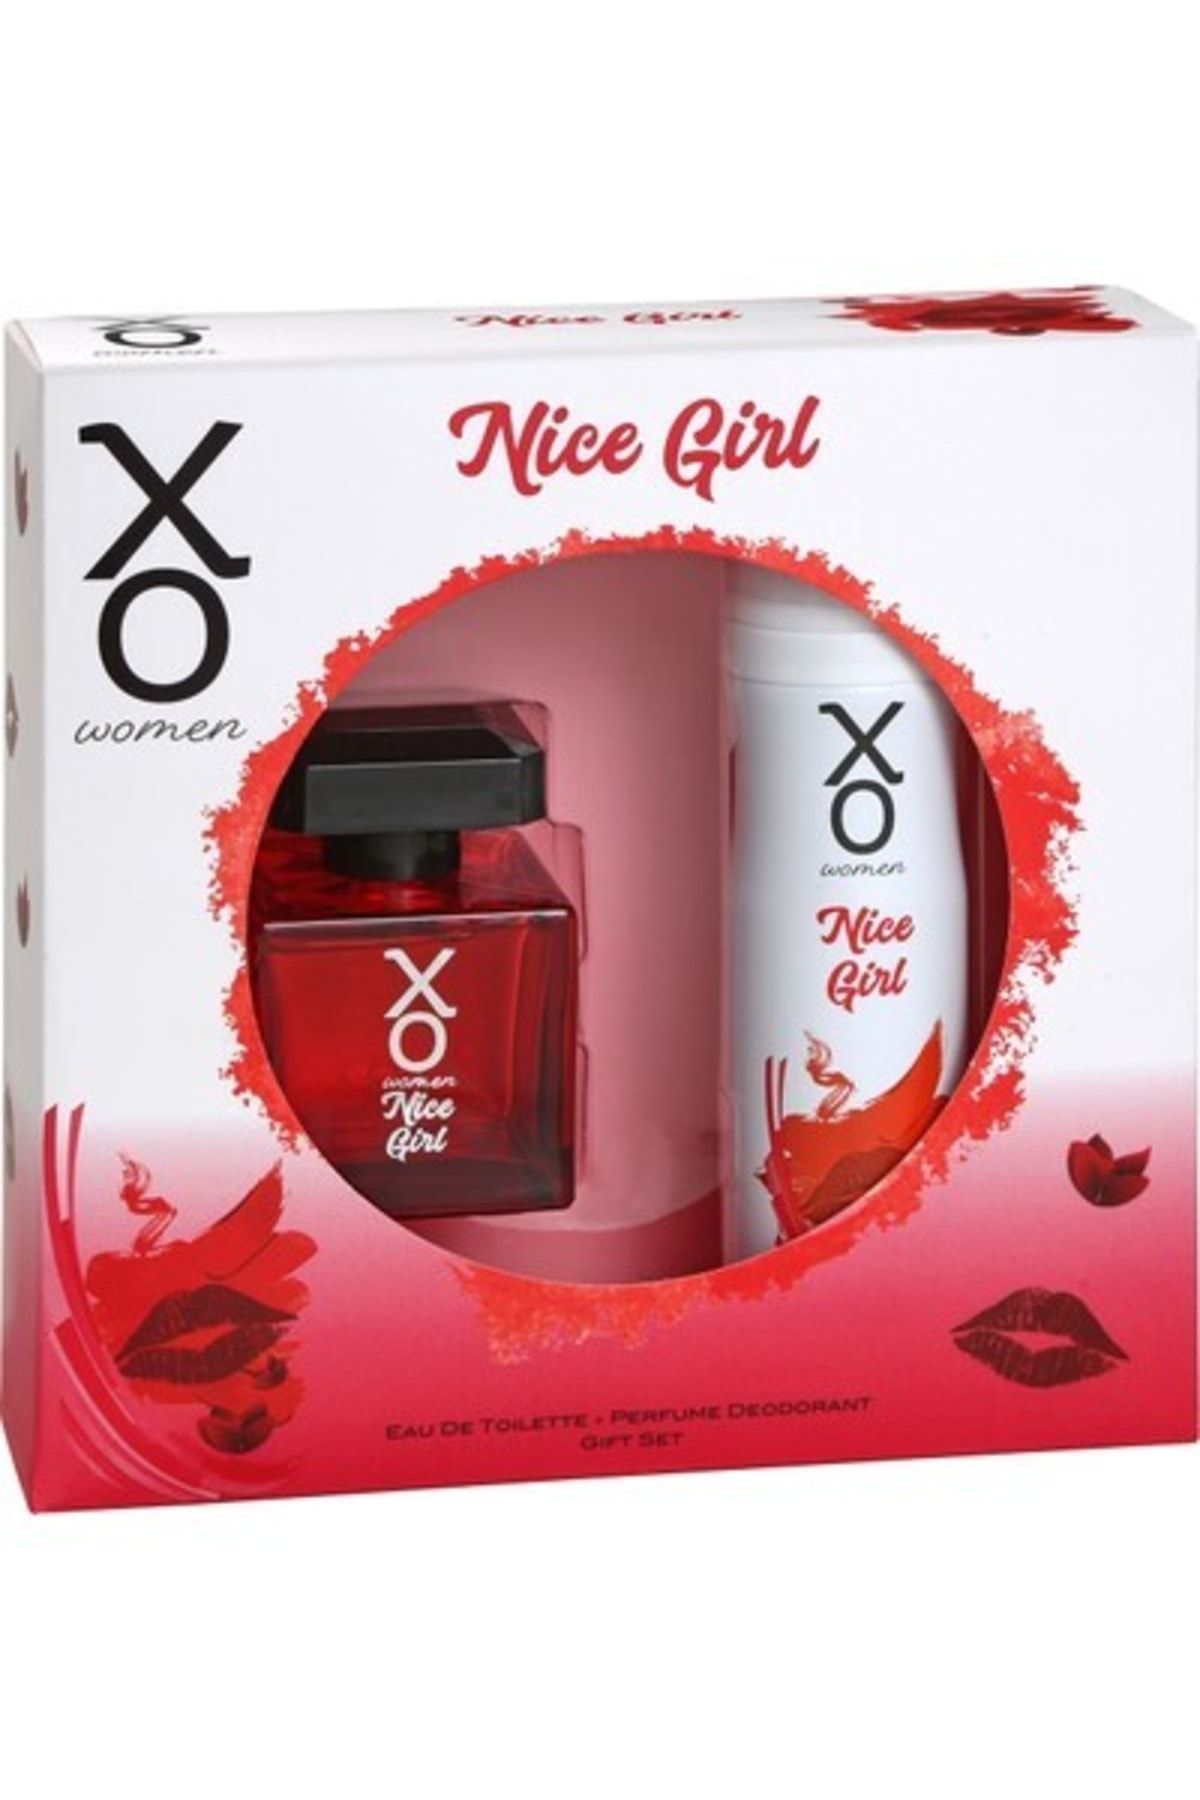 Xo Orıjınal Nice Girl Kadın Parfüm Seti 100 Ml Edt + 125 Ml Deodorant Ikili Set